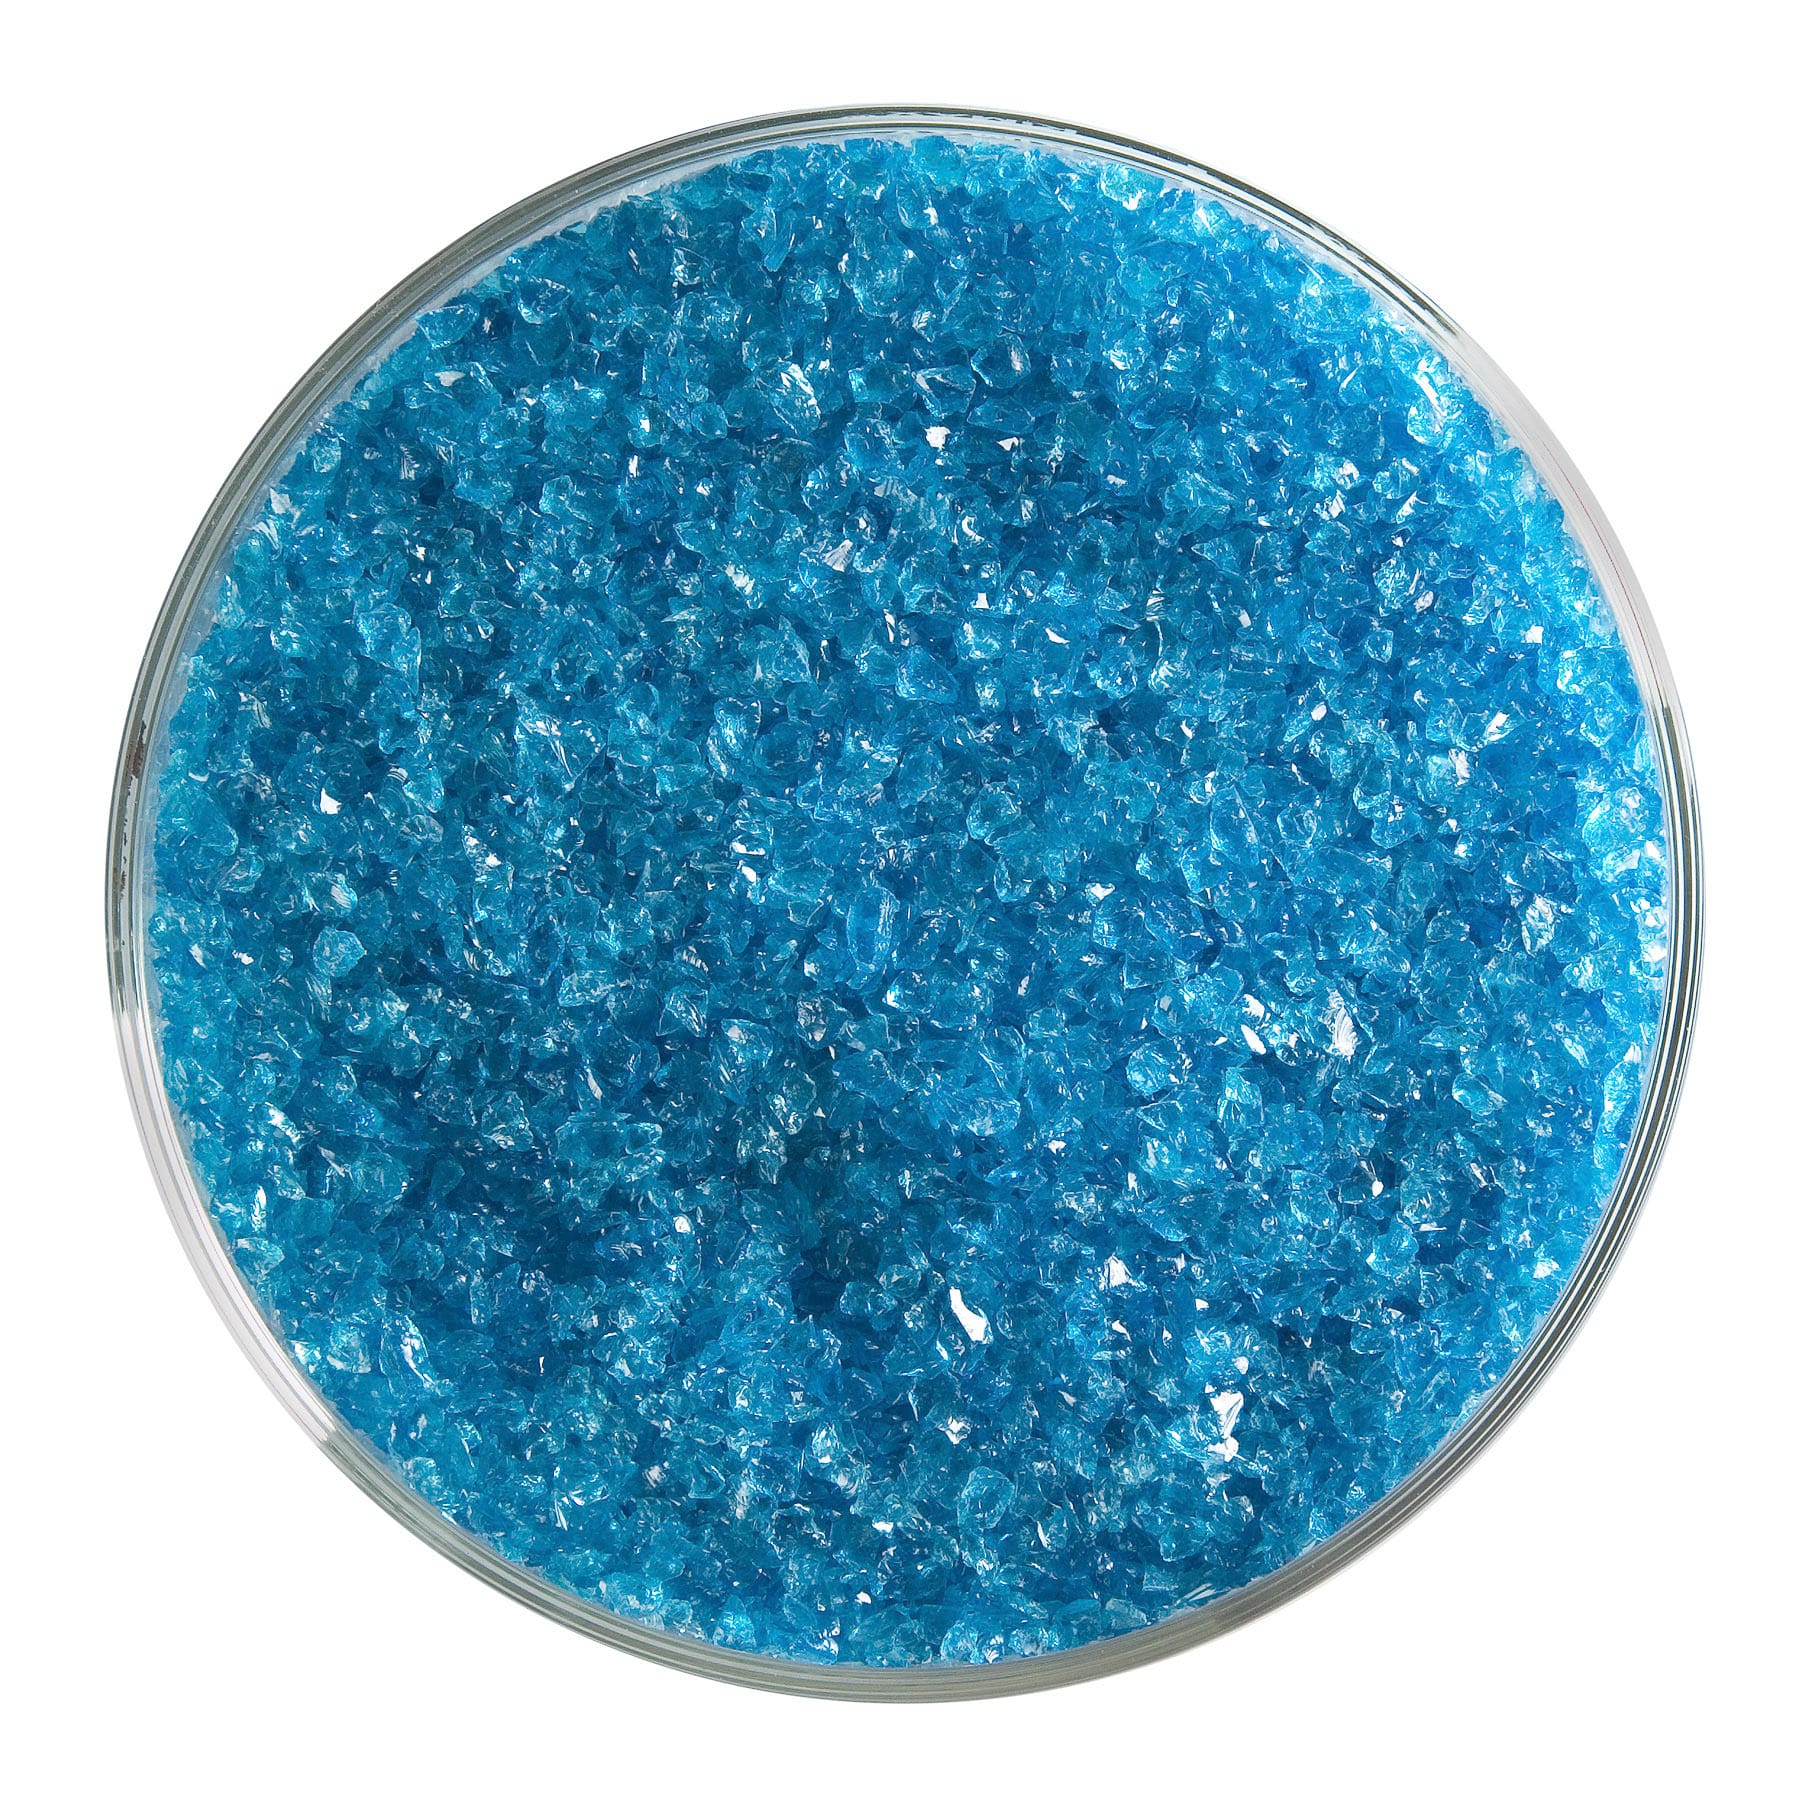 Bullseye COE90 Fusing Glass 001116 Turquoise Blue Frit